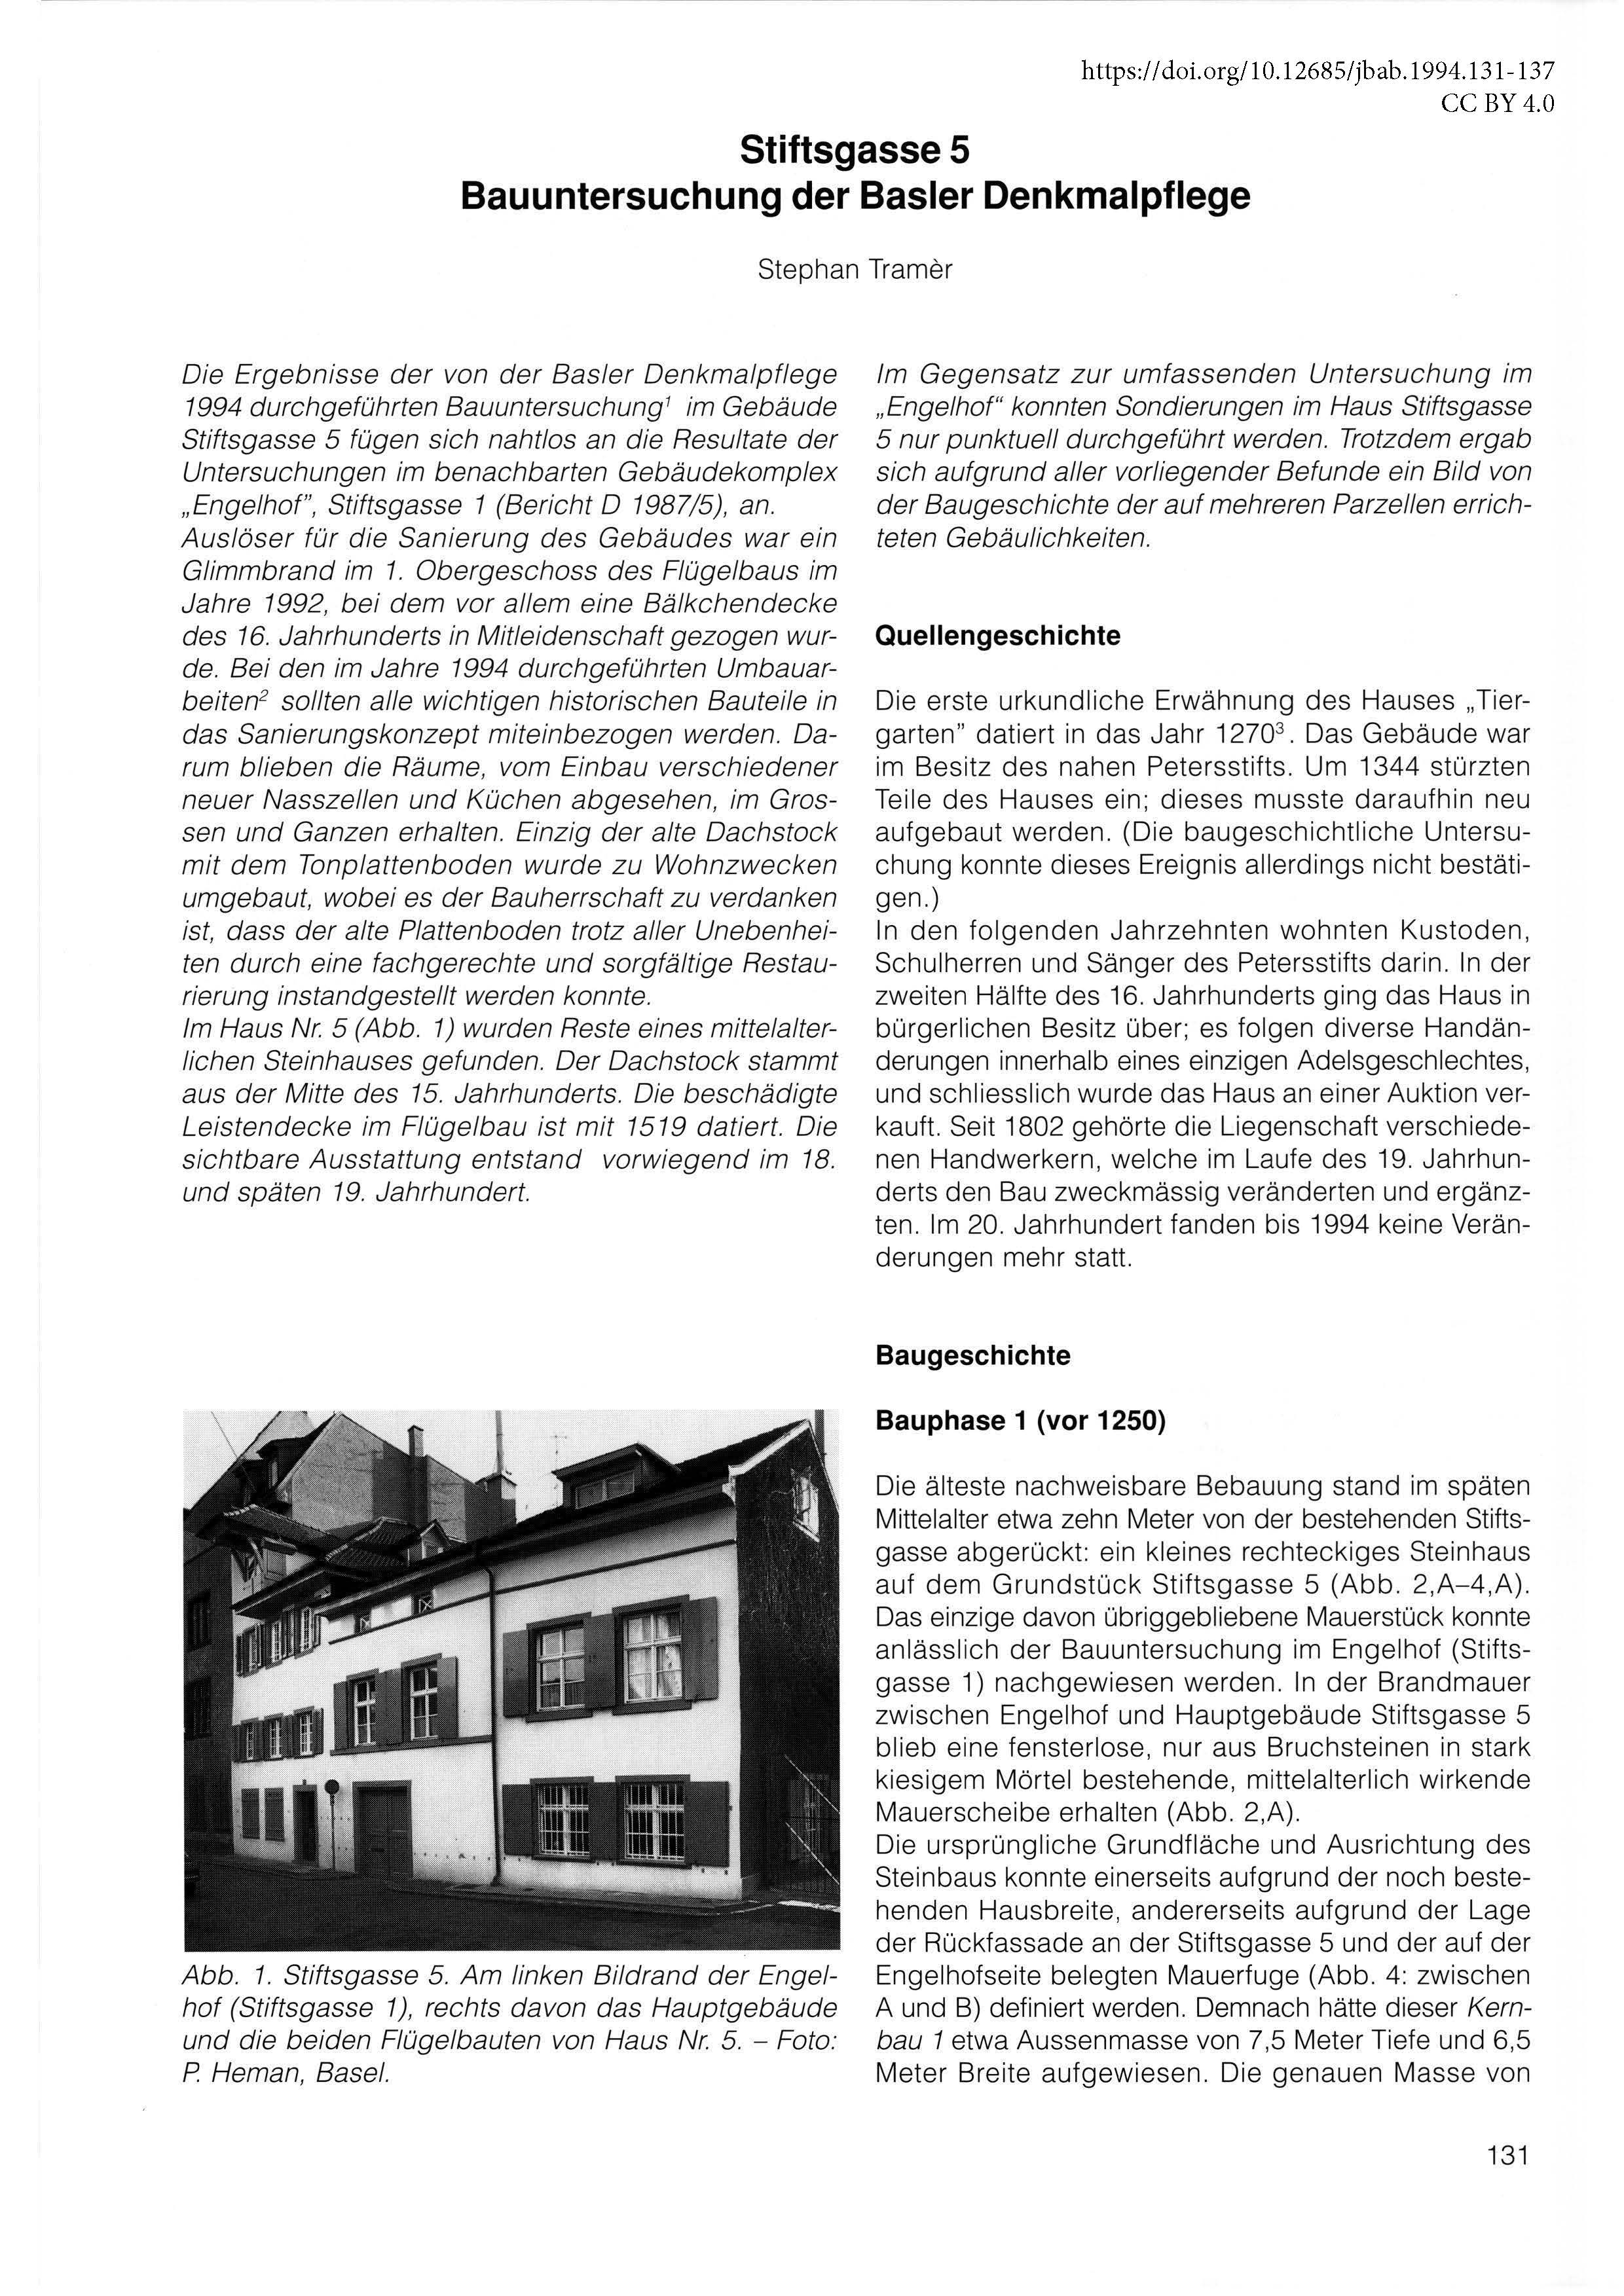 Erste Seite des Berichts über die Bauuntersuchung an der Stiftsgasse 5